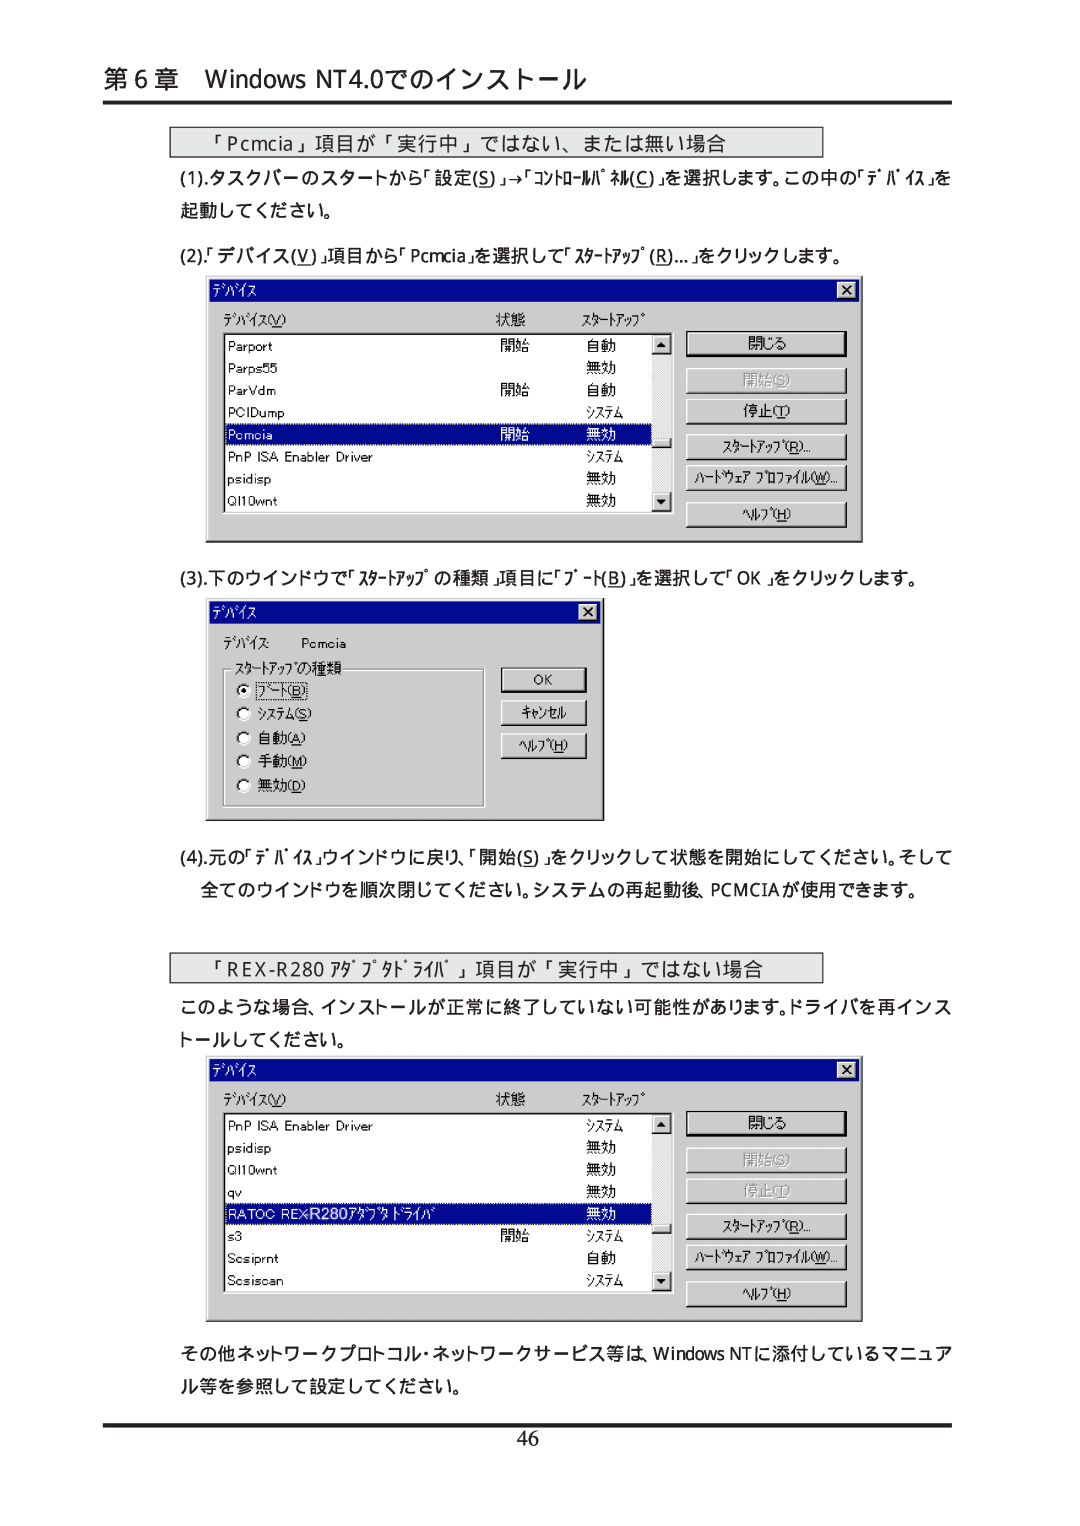 Ratoc Systems manual 第６章 Windows NT4.0でのインストール, 「Pcmcia」項目が「実行中」ではない、または無い場合, 「REX-R280 ｱﾀﾞﾌﾟﾀﾄﾞﾗｲﾊﾞ」項目が「実行中」ではない場合 